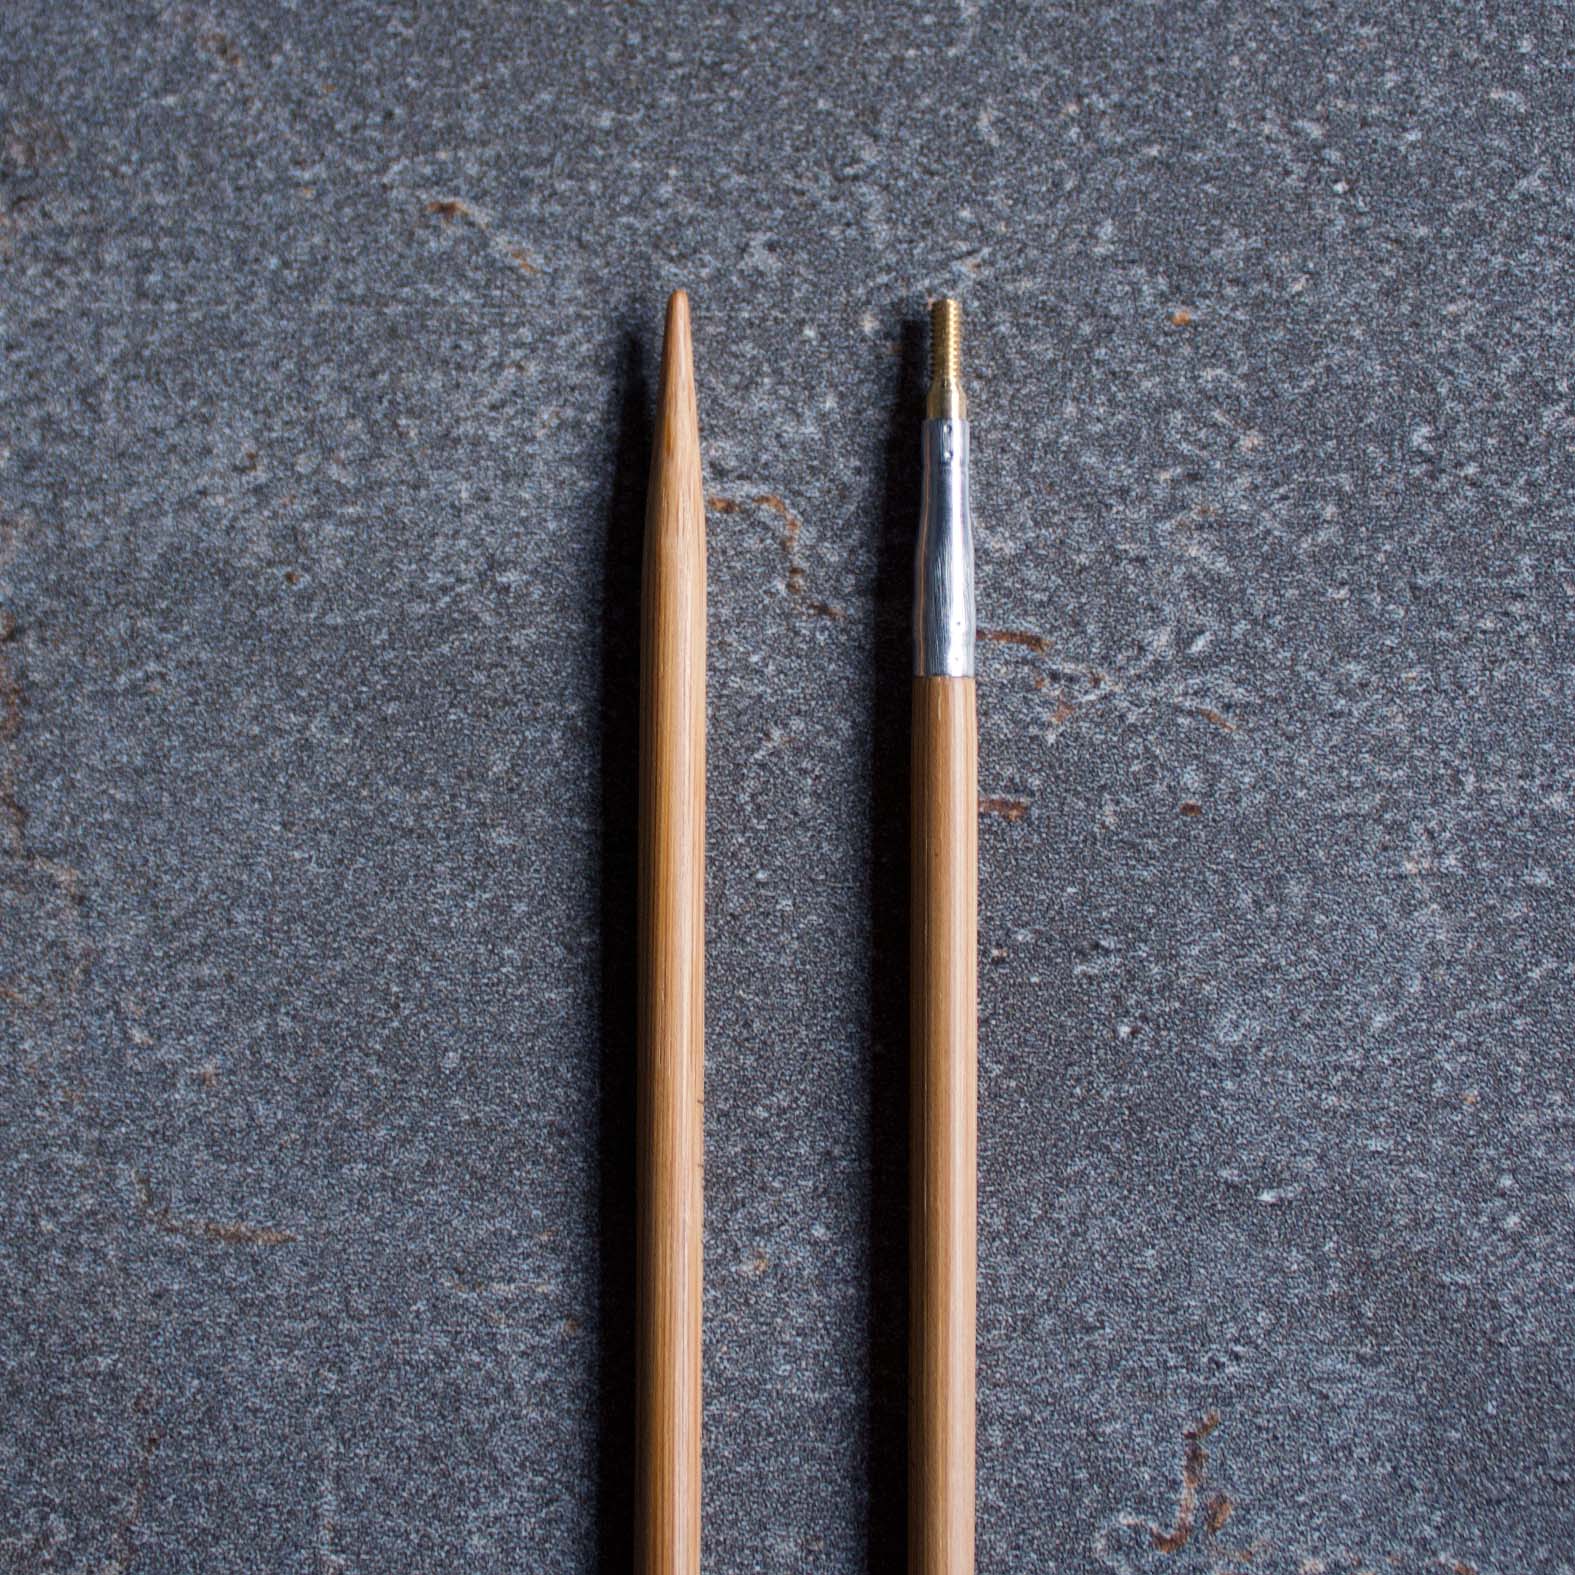 HiyaHiya - Bamboo Interchangeable Needles Set